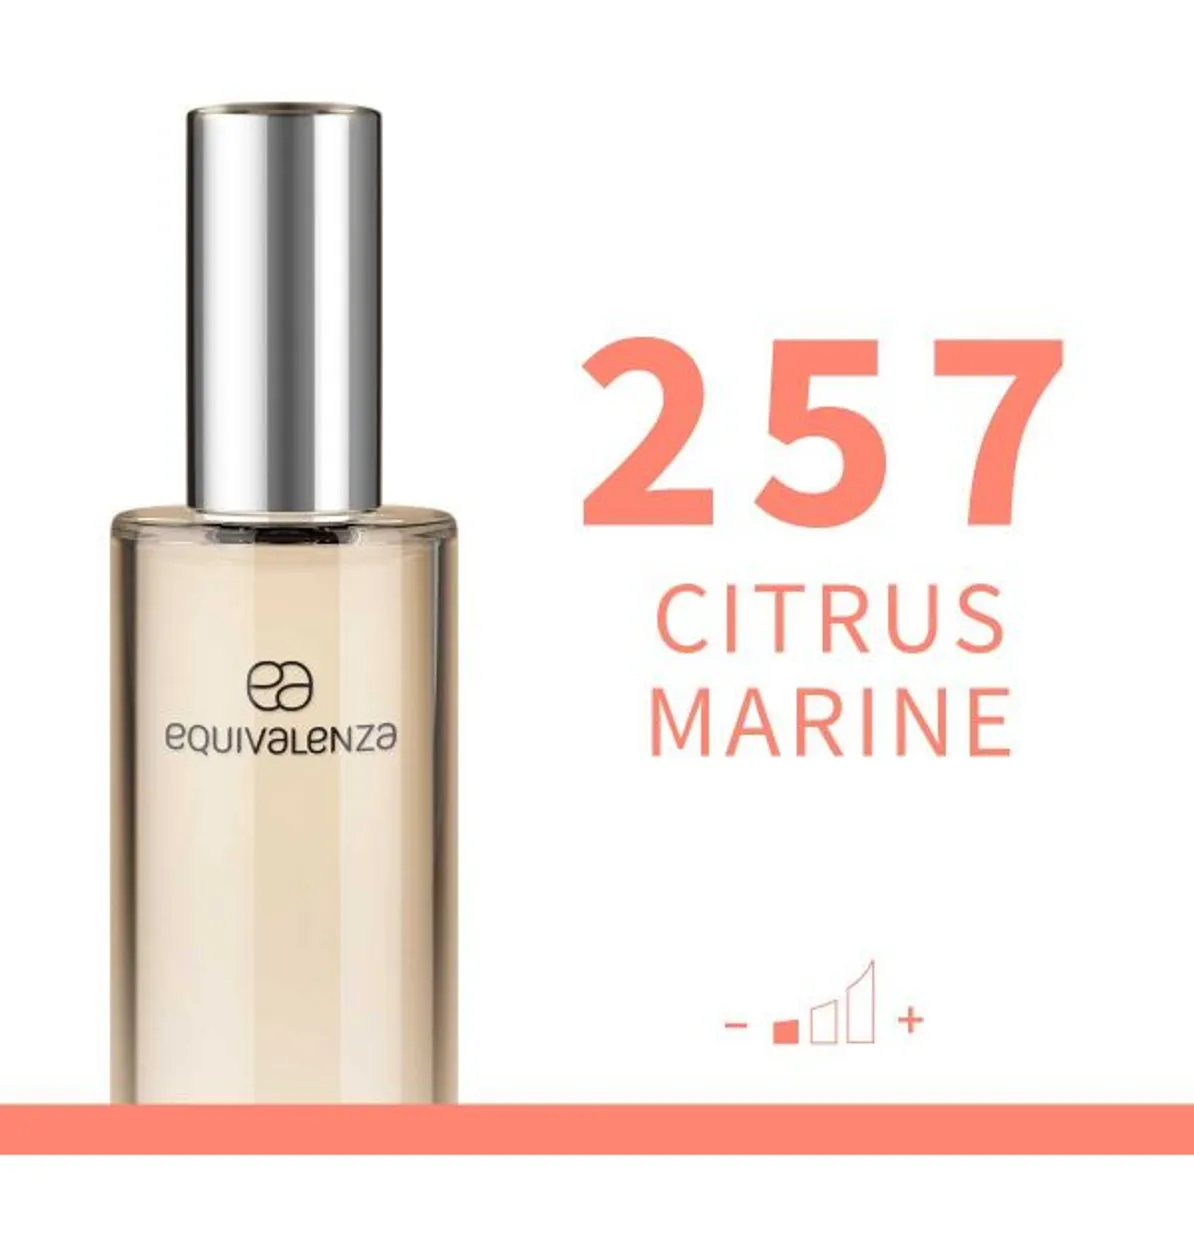 257 - Citrus Marine 30ml